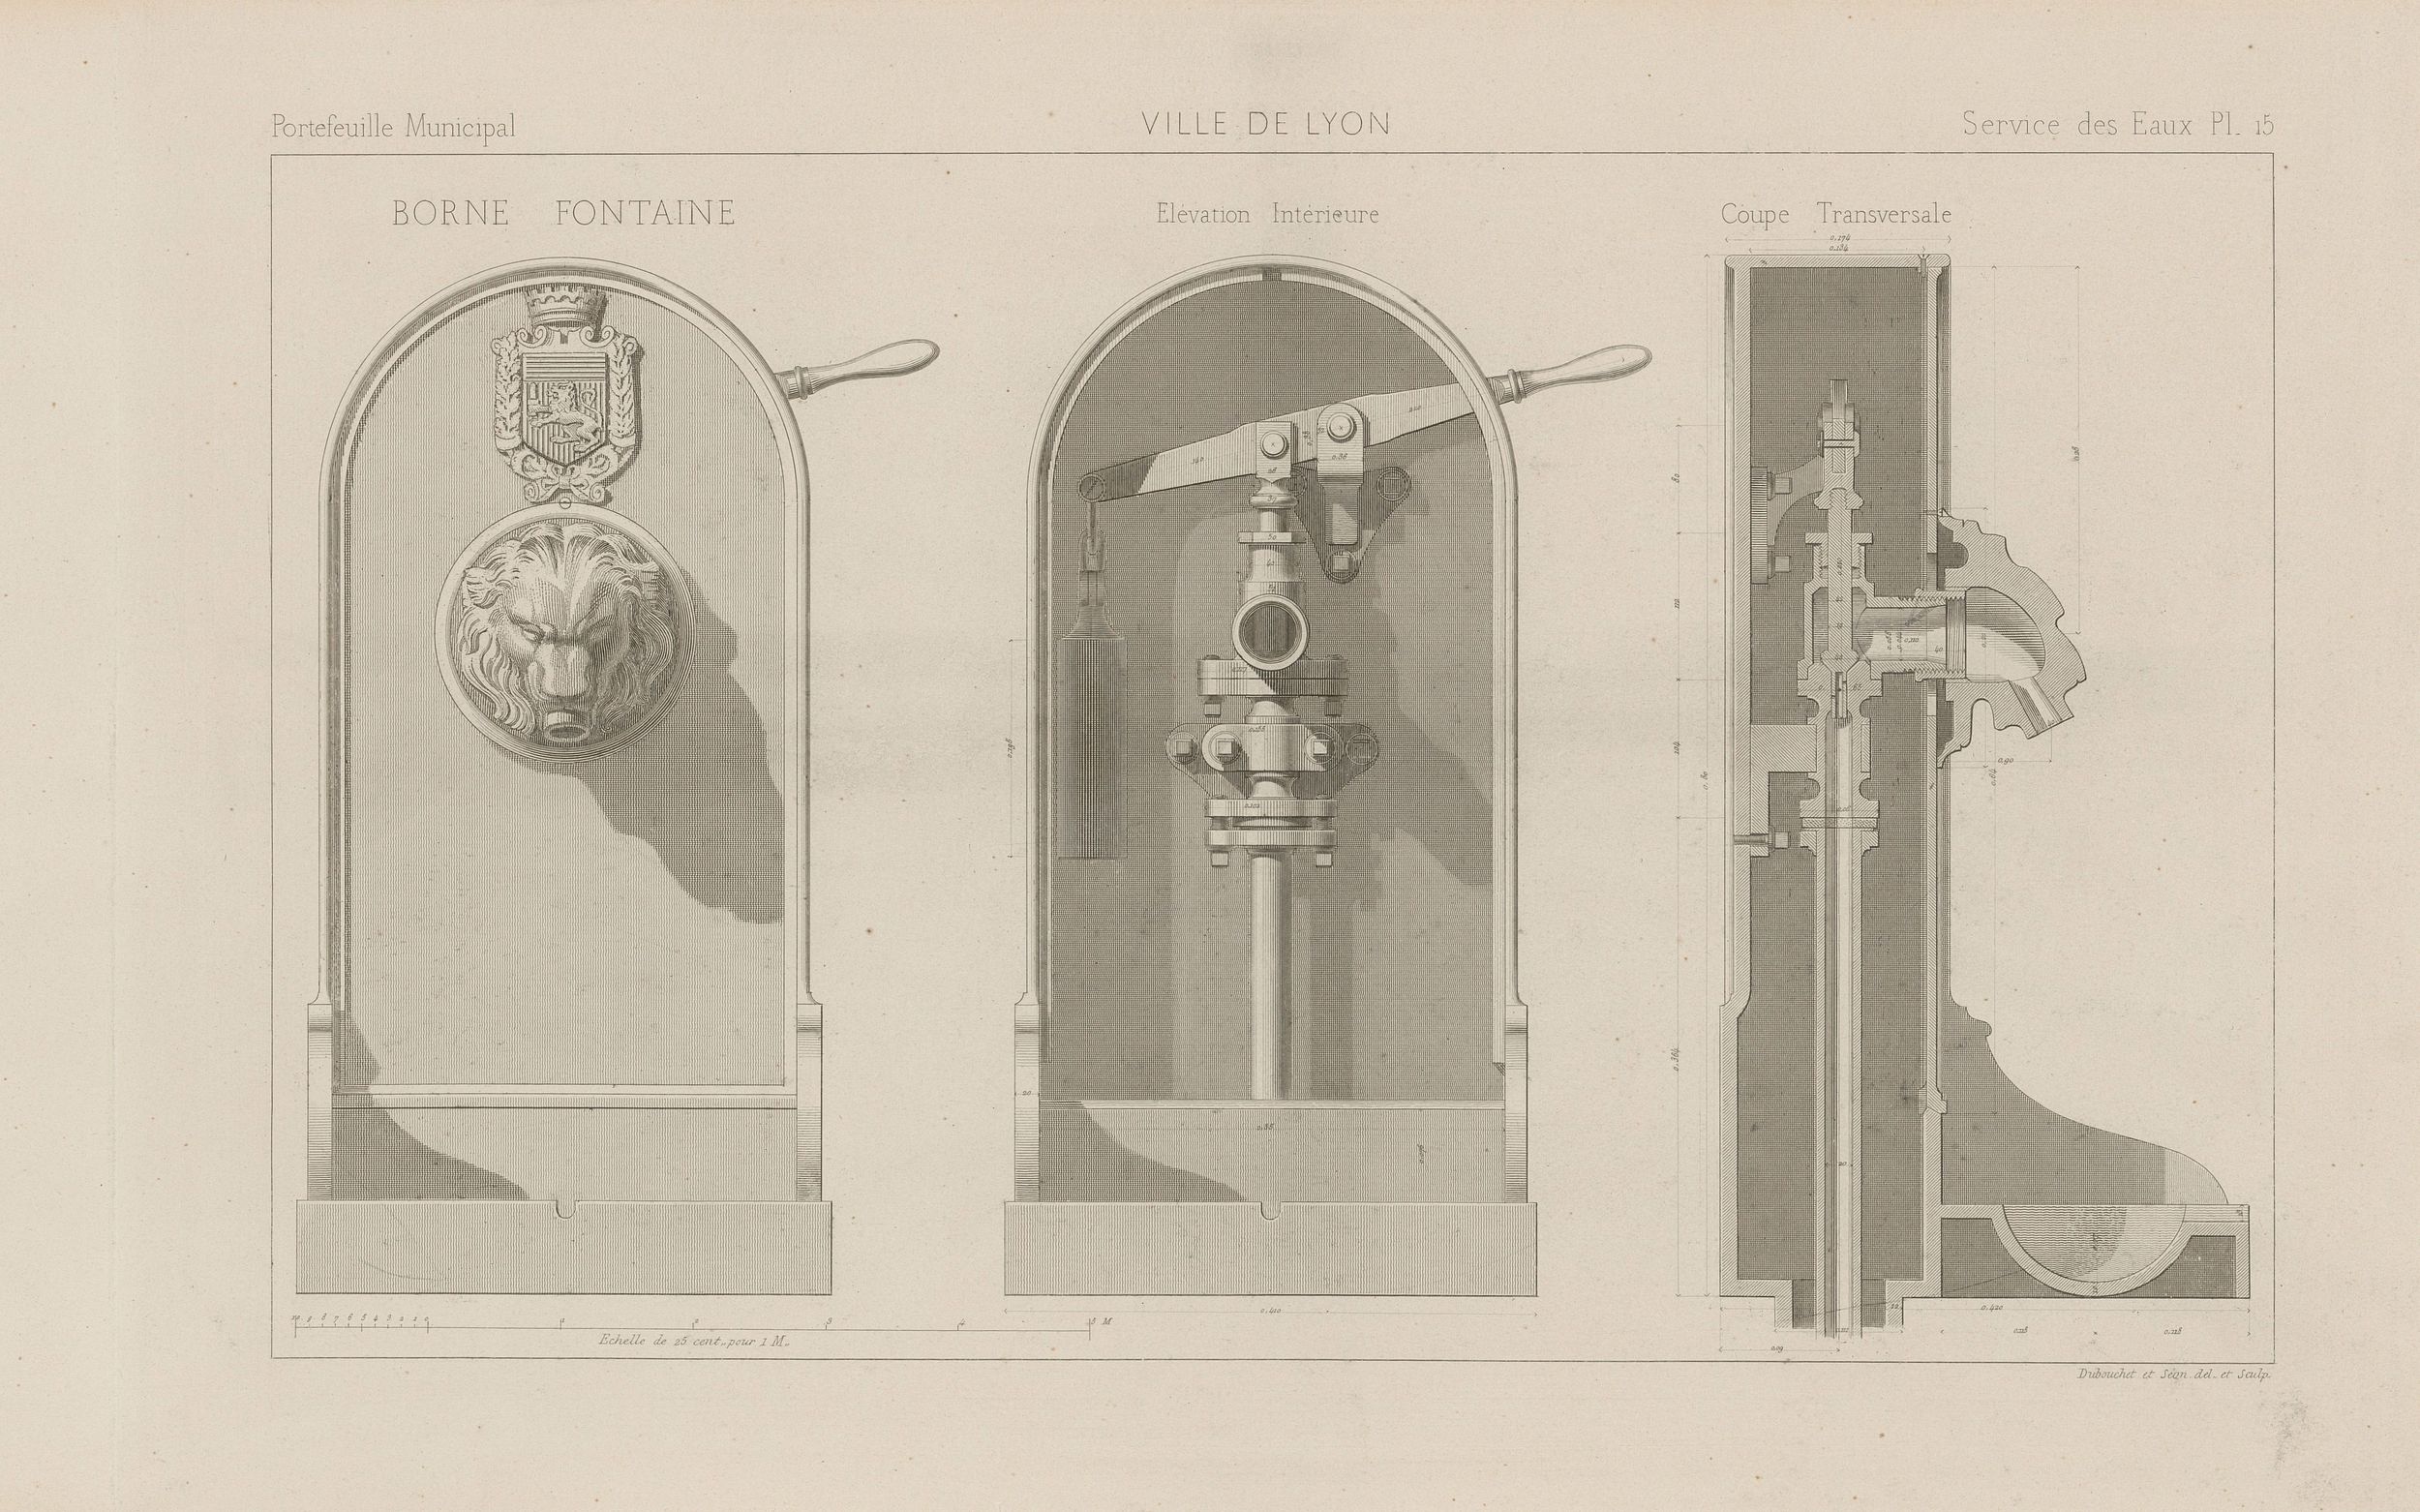 Borne fontaine : catalogue de pièces techniques et de mobilier urbain utilisés par les services des eaux et du gaz de la Ville de Lyon, sur papier cartonné NB au burin et eau-forte (1876, cote : 3SAT/8/18)